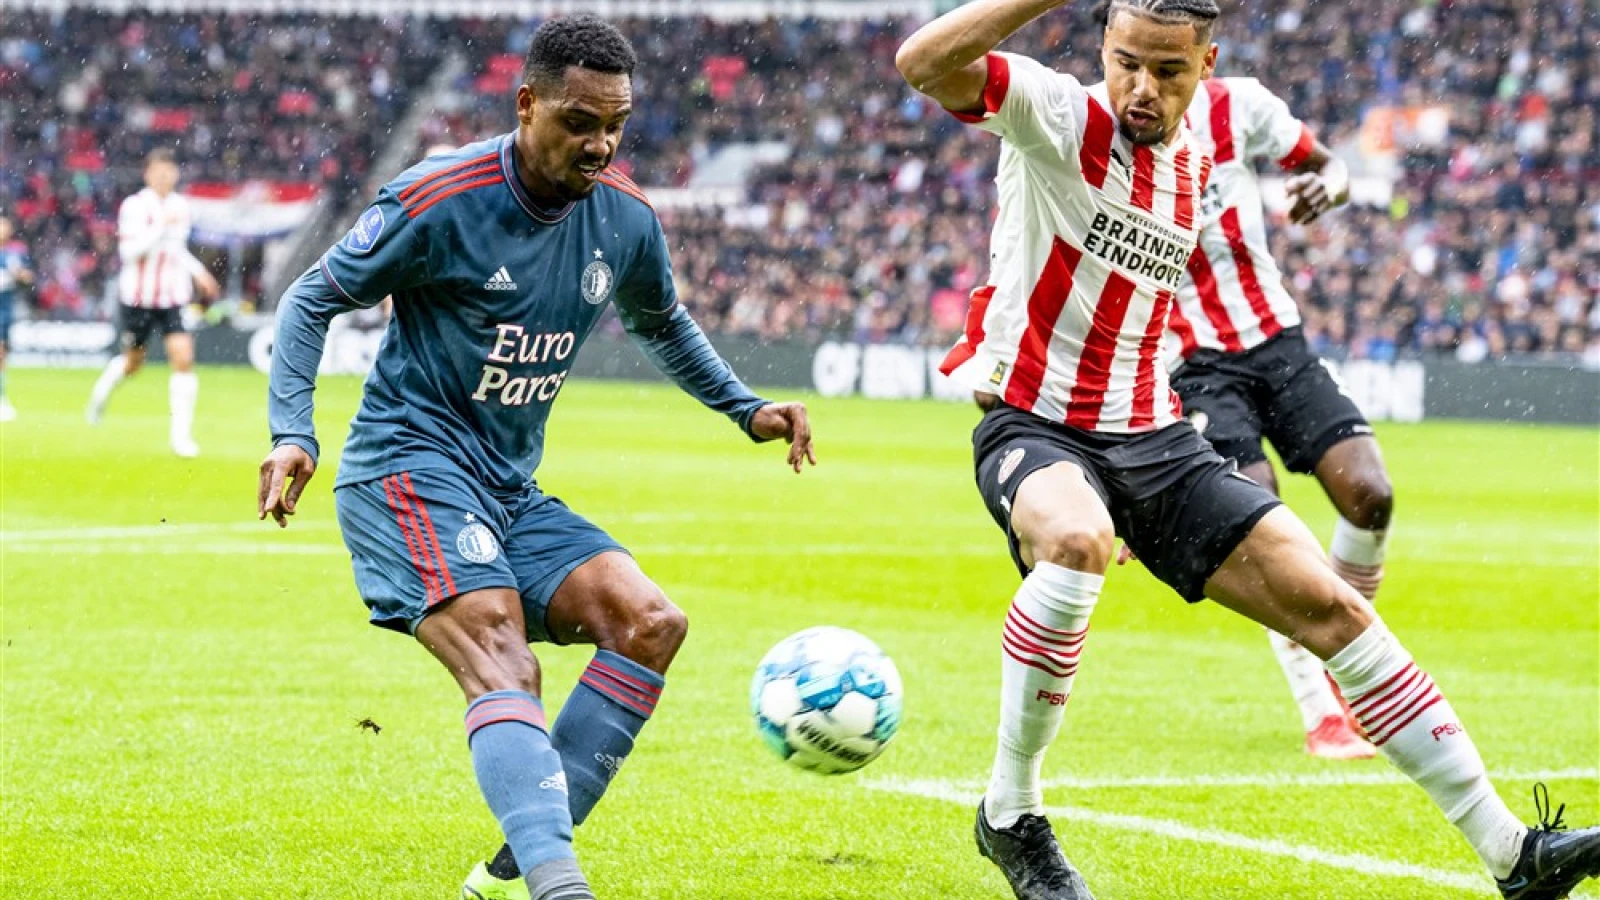 LIVE | PSV - Feyenoord 4-3 | Einde wedstrijd